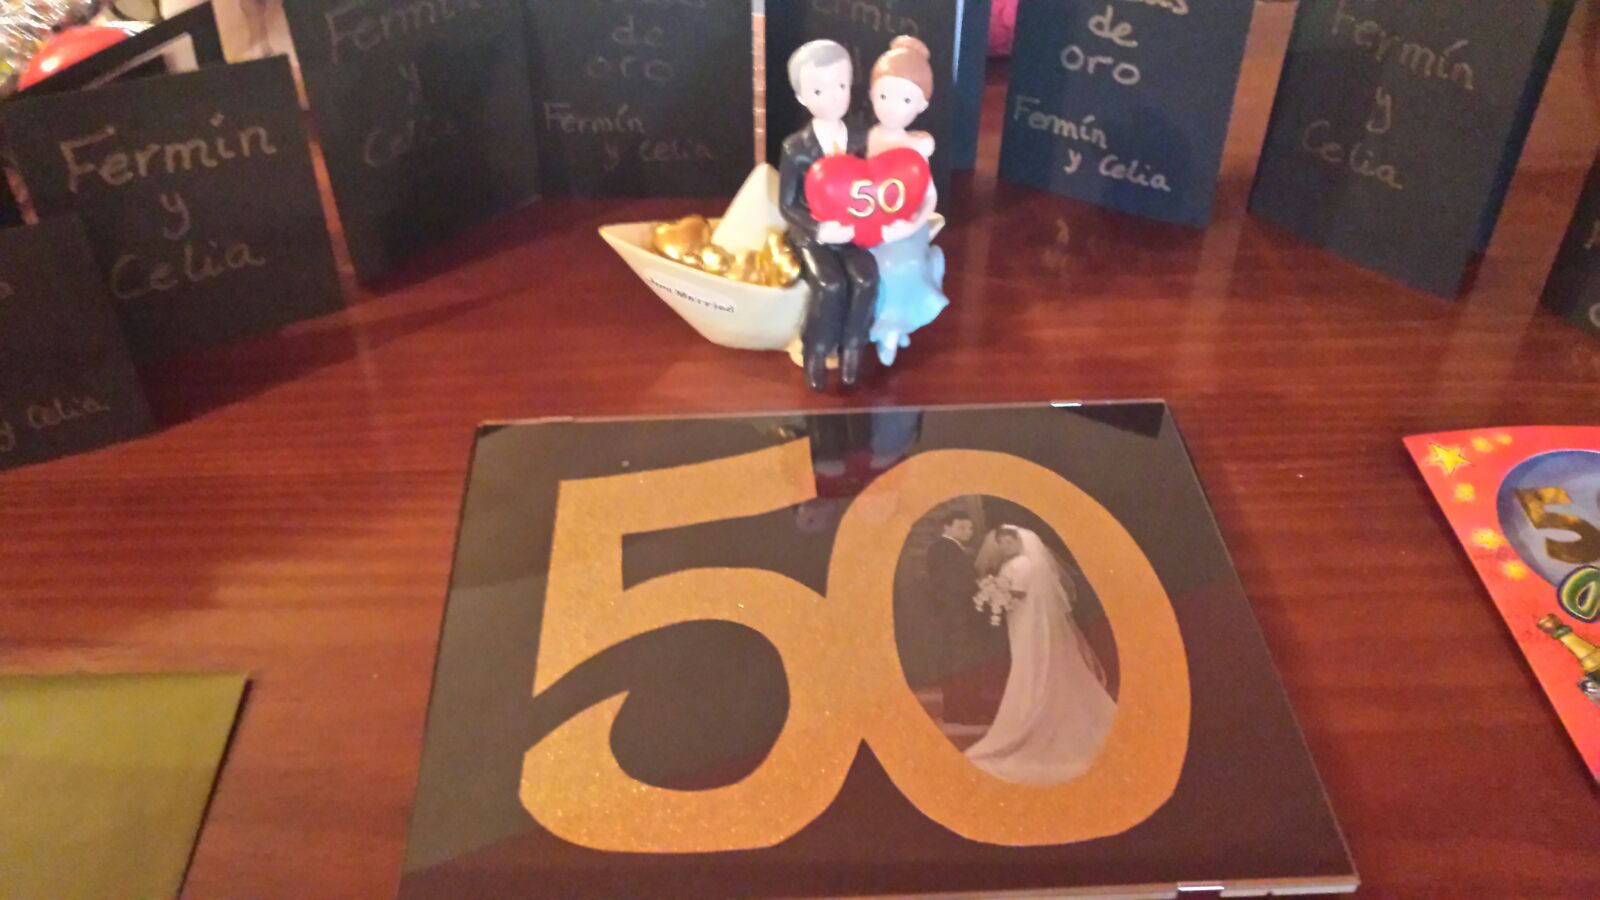 Muchas felicidades a Fermin y Celia en suite 50 aniversario